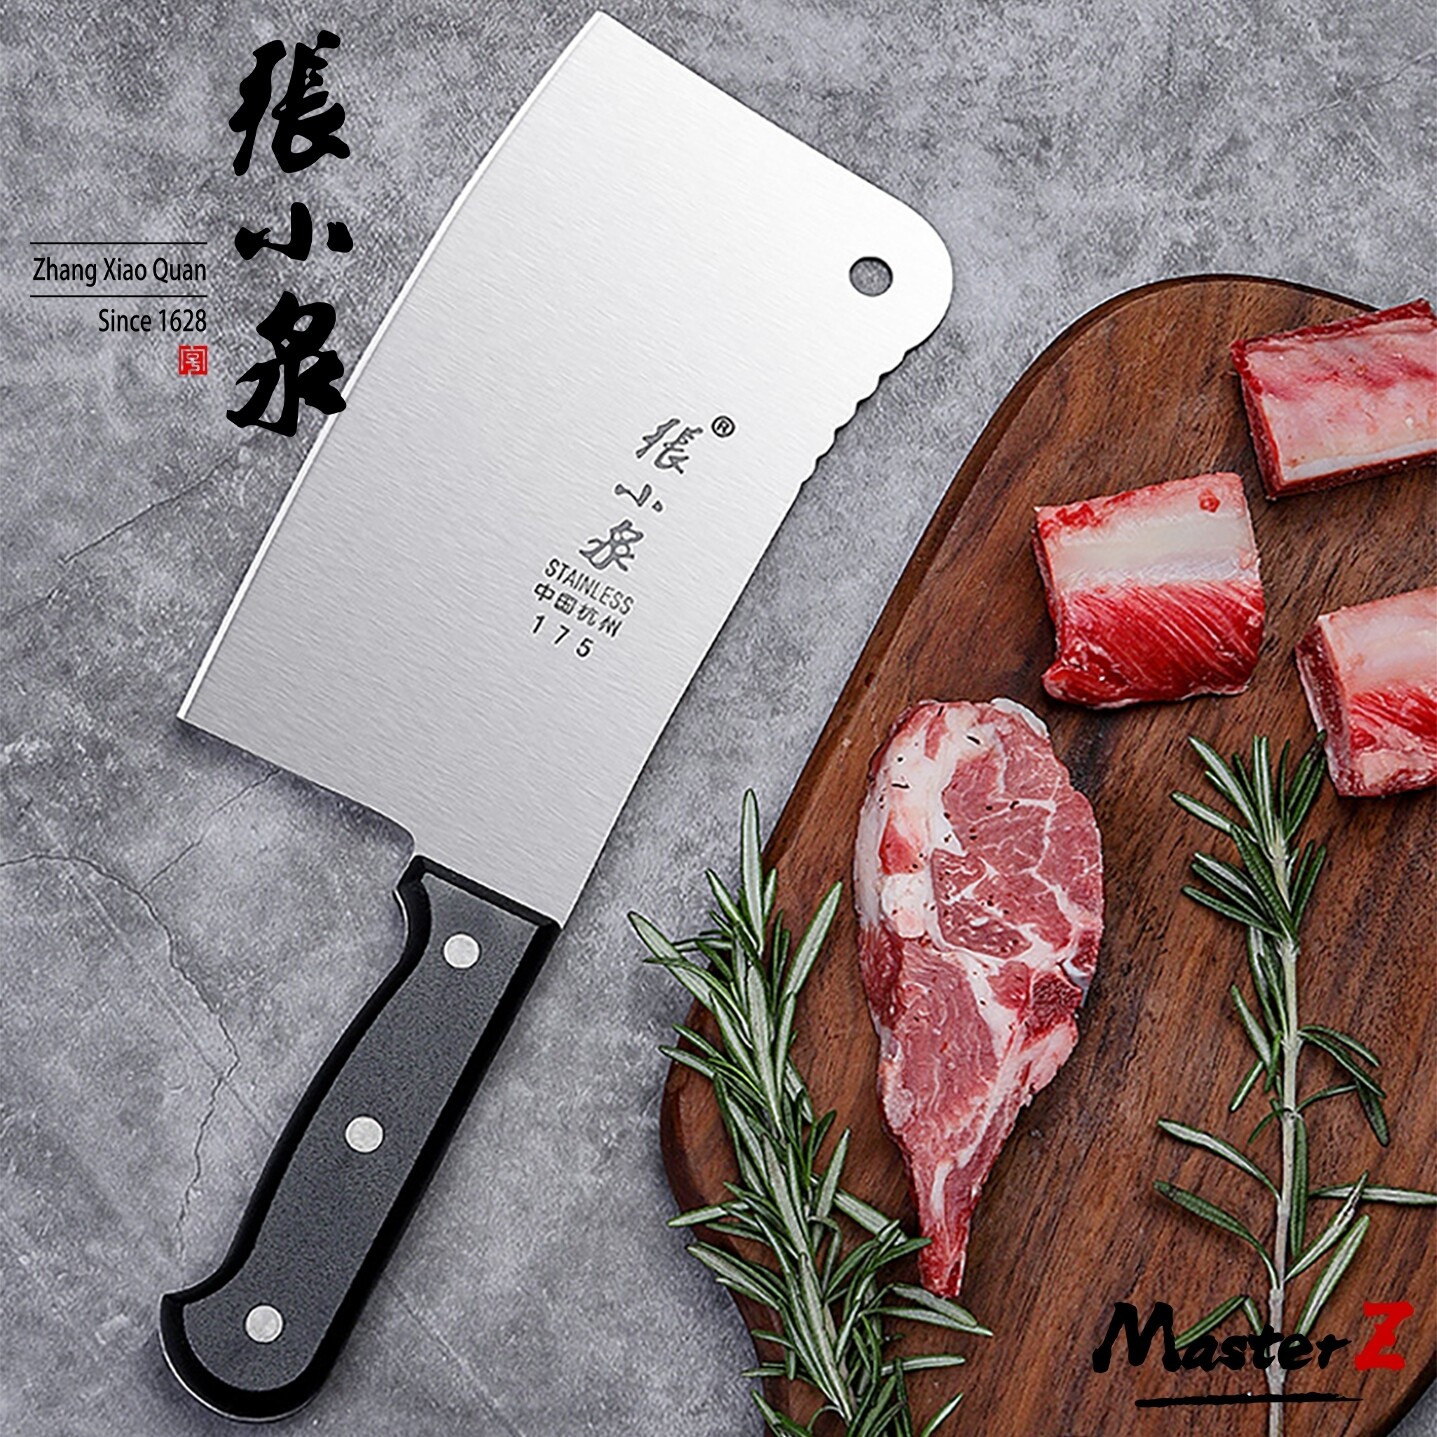 มีดครัว ZhangXiaoQuan มีด มีดสแตนเลสหนาสำหรับตัดกระดูก มีดปังตอสแตนเลส มีดอีโต้ เนื้อหนา แข็งแรง ทนทาน ZG-175S / MasterZ